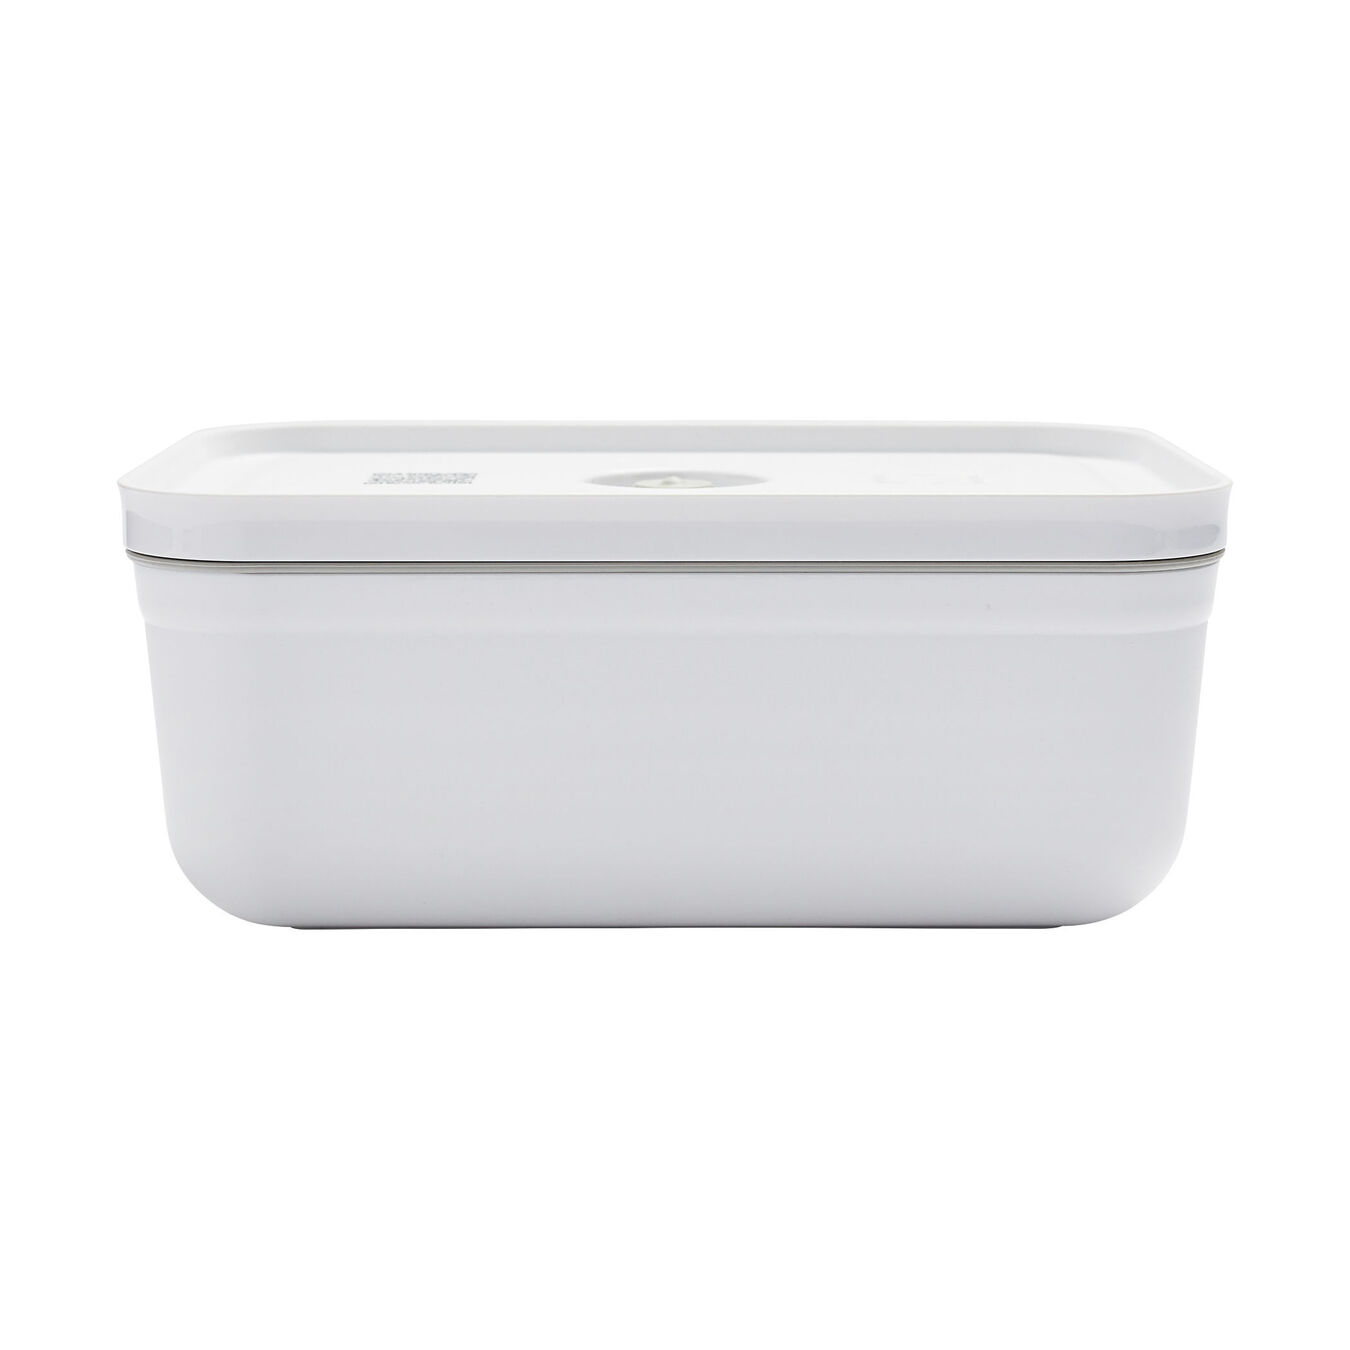 Lunch box sottovuoto L, plastica, bianco-grigio,,large 3